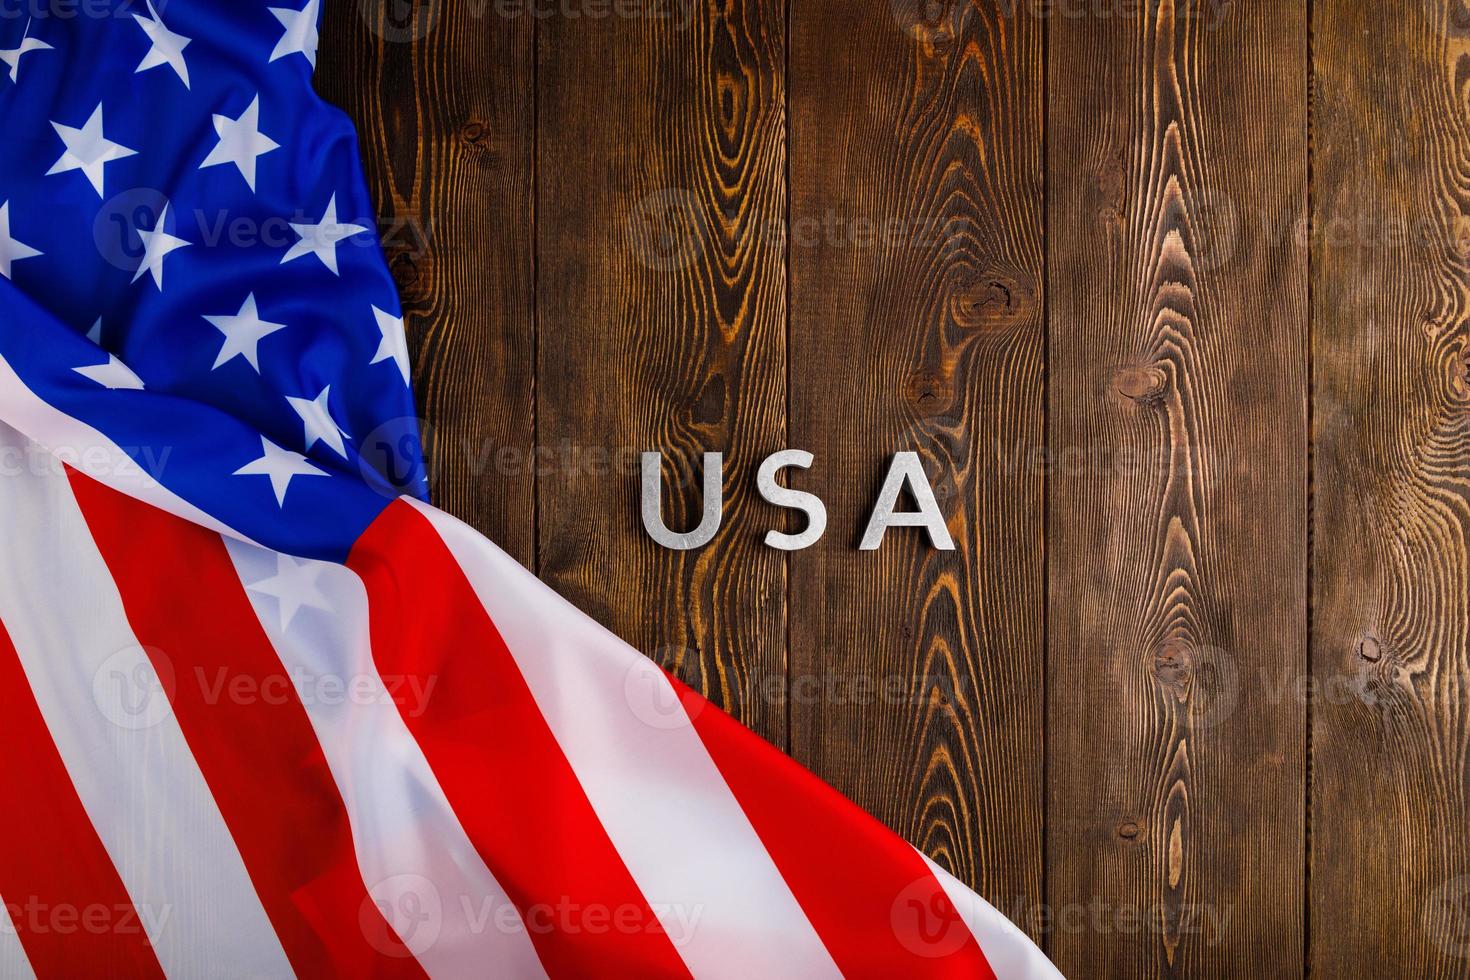 das wort usa mit silbernen metallbuchstaben auf holzbrettoberfläche mit zerknitterter flagge der vereinigten staaten von amerika gelegt foto